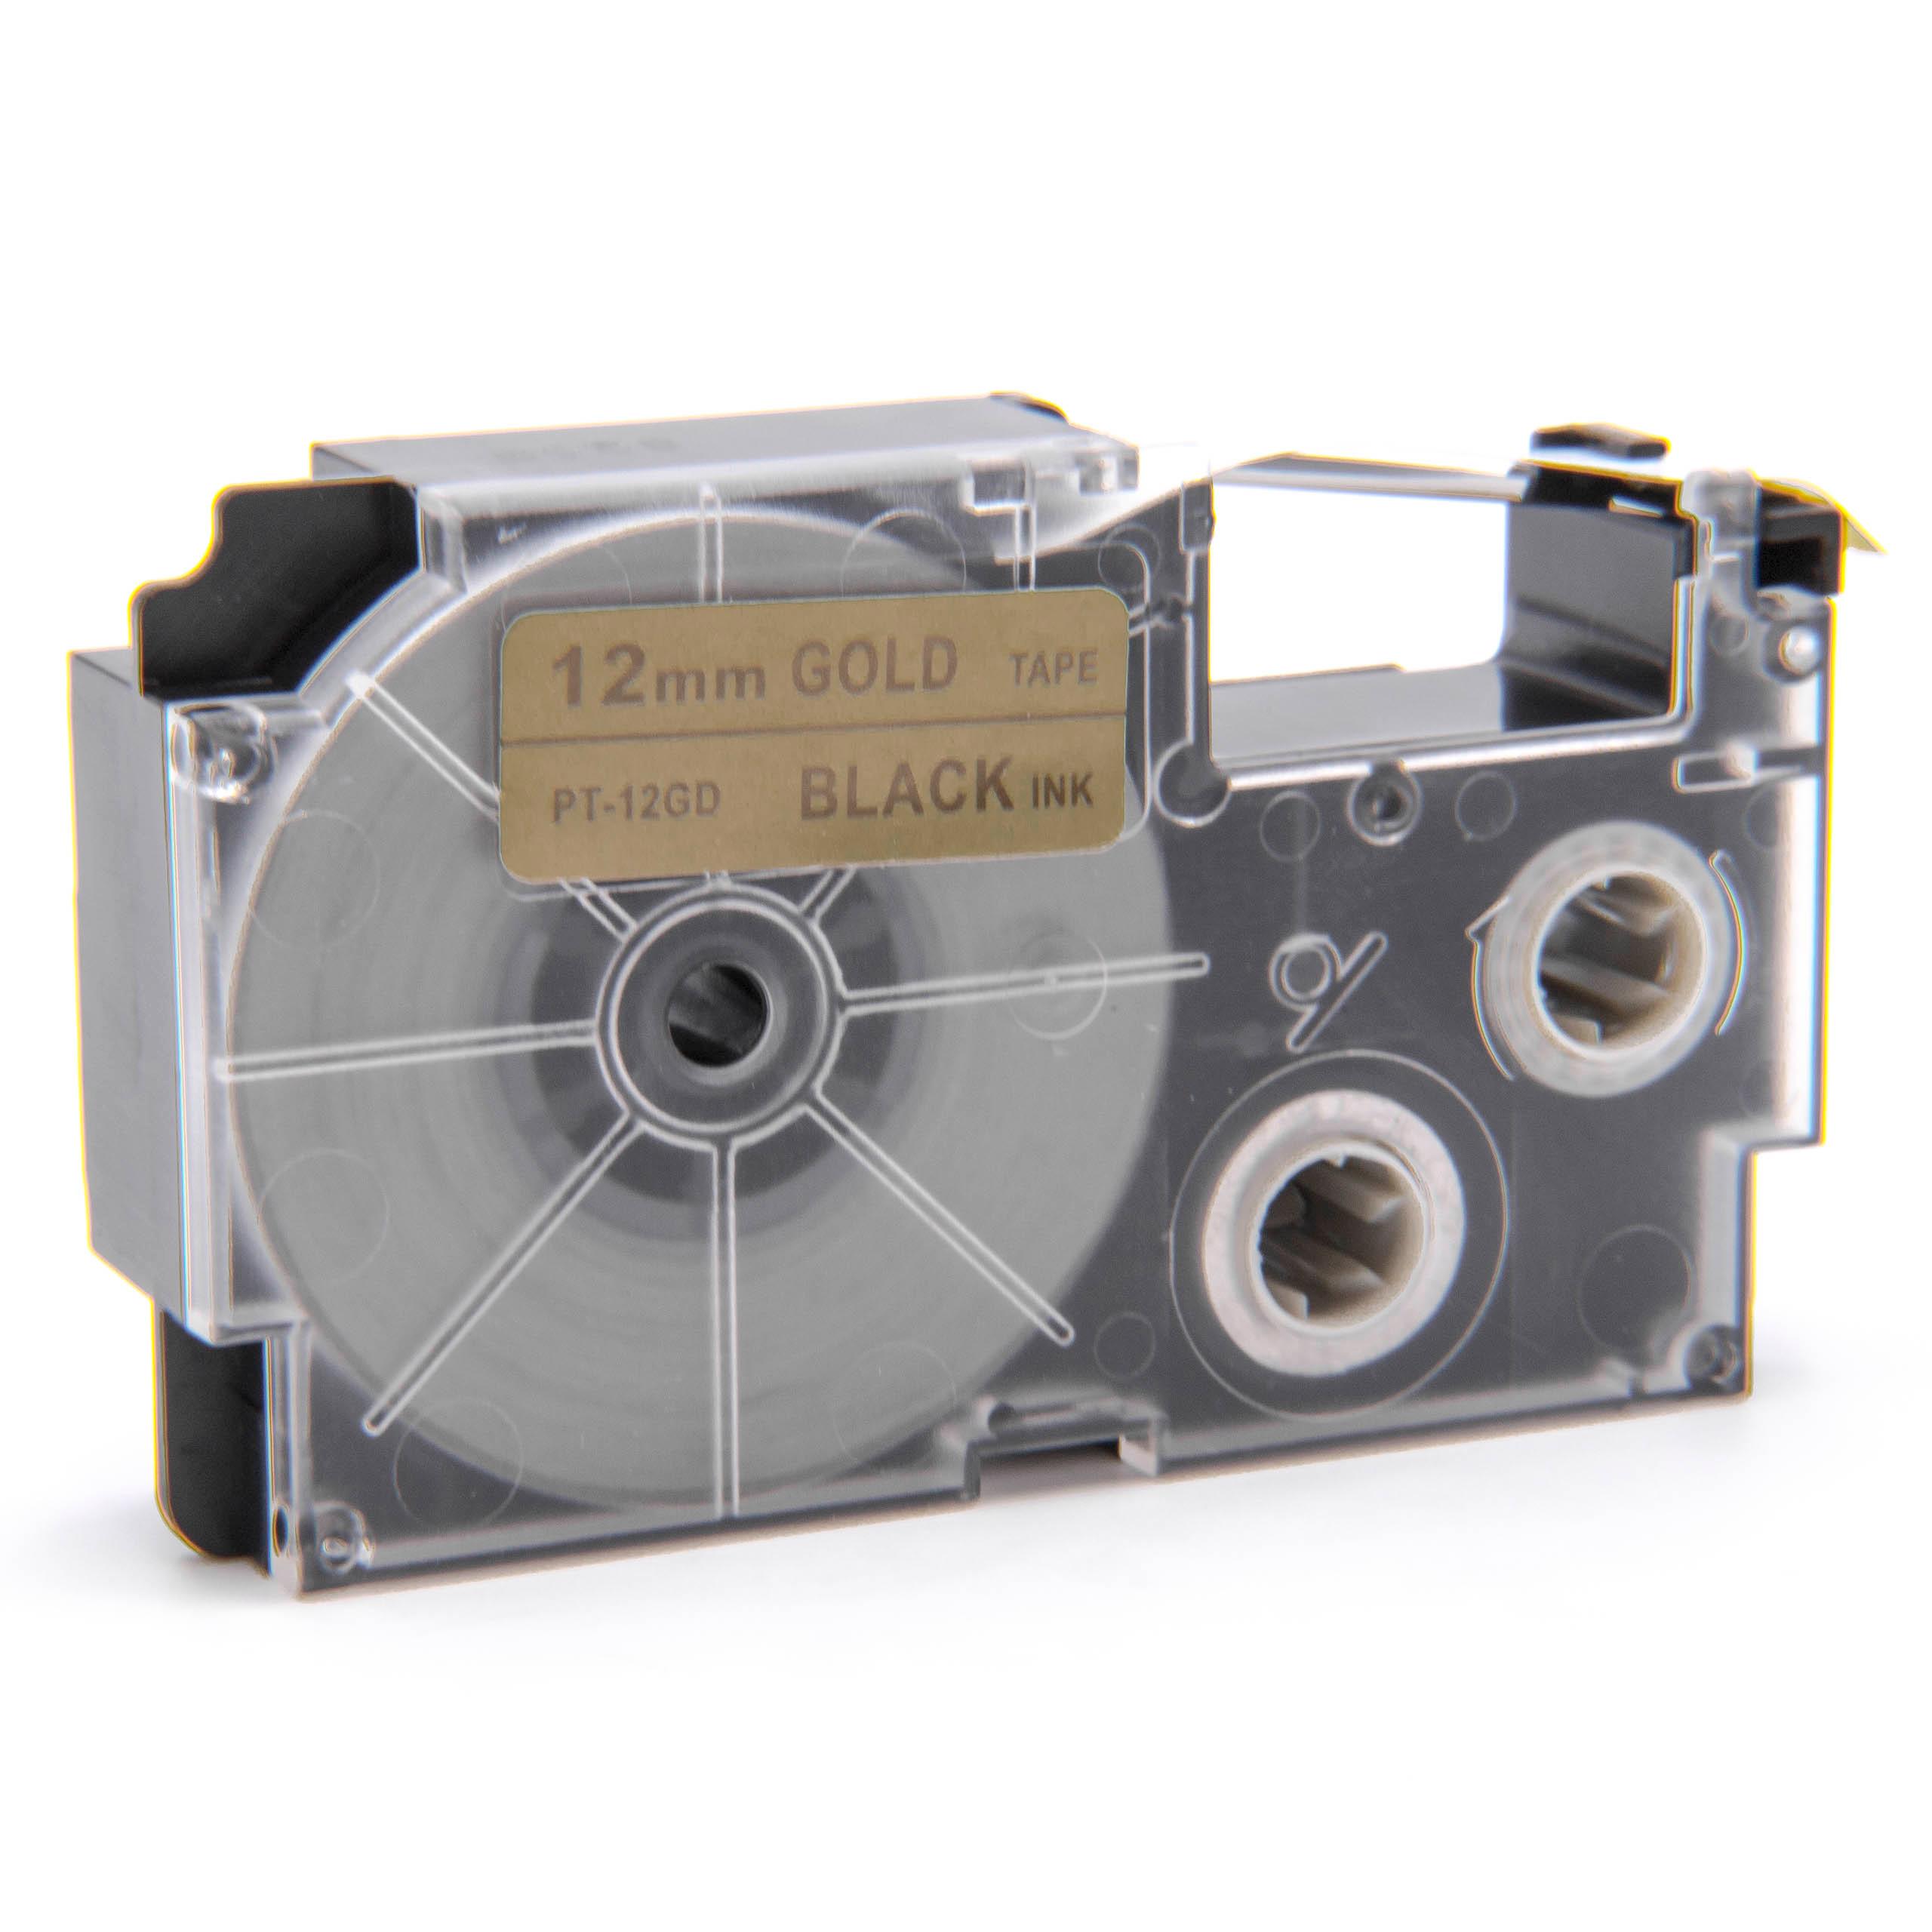 Cassetta nastro sostituisce Casio XR-12GD, XR-12GD1 per etichettatrice Casio 12mm nero su dorato